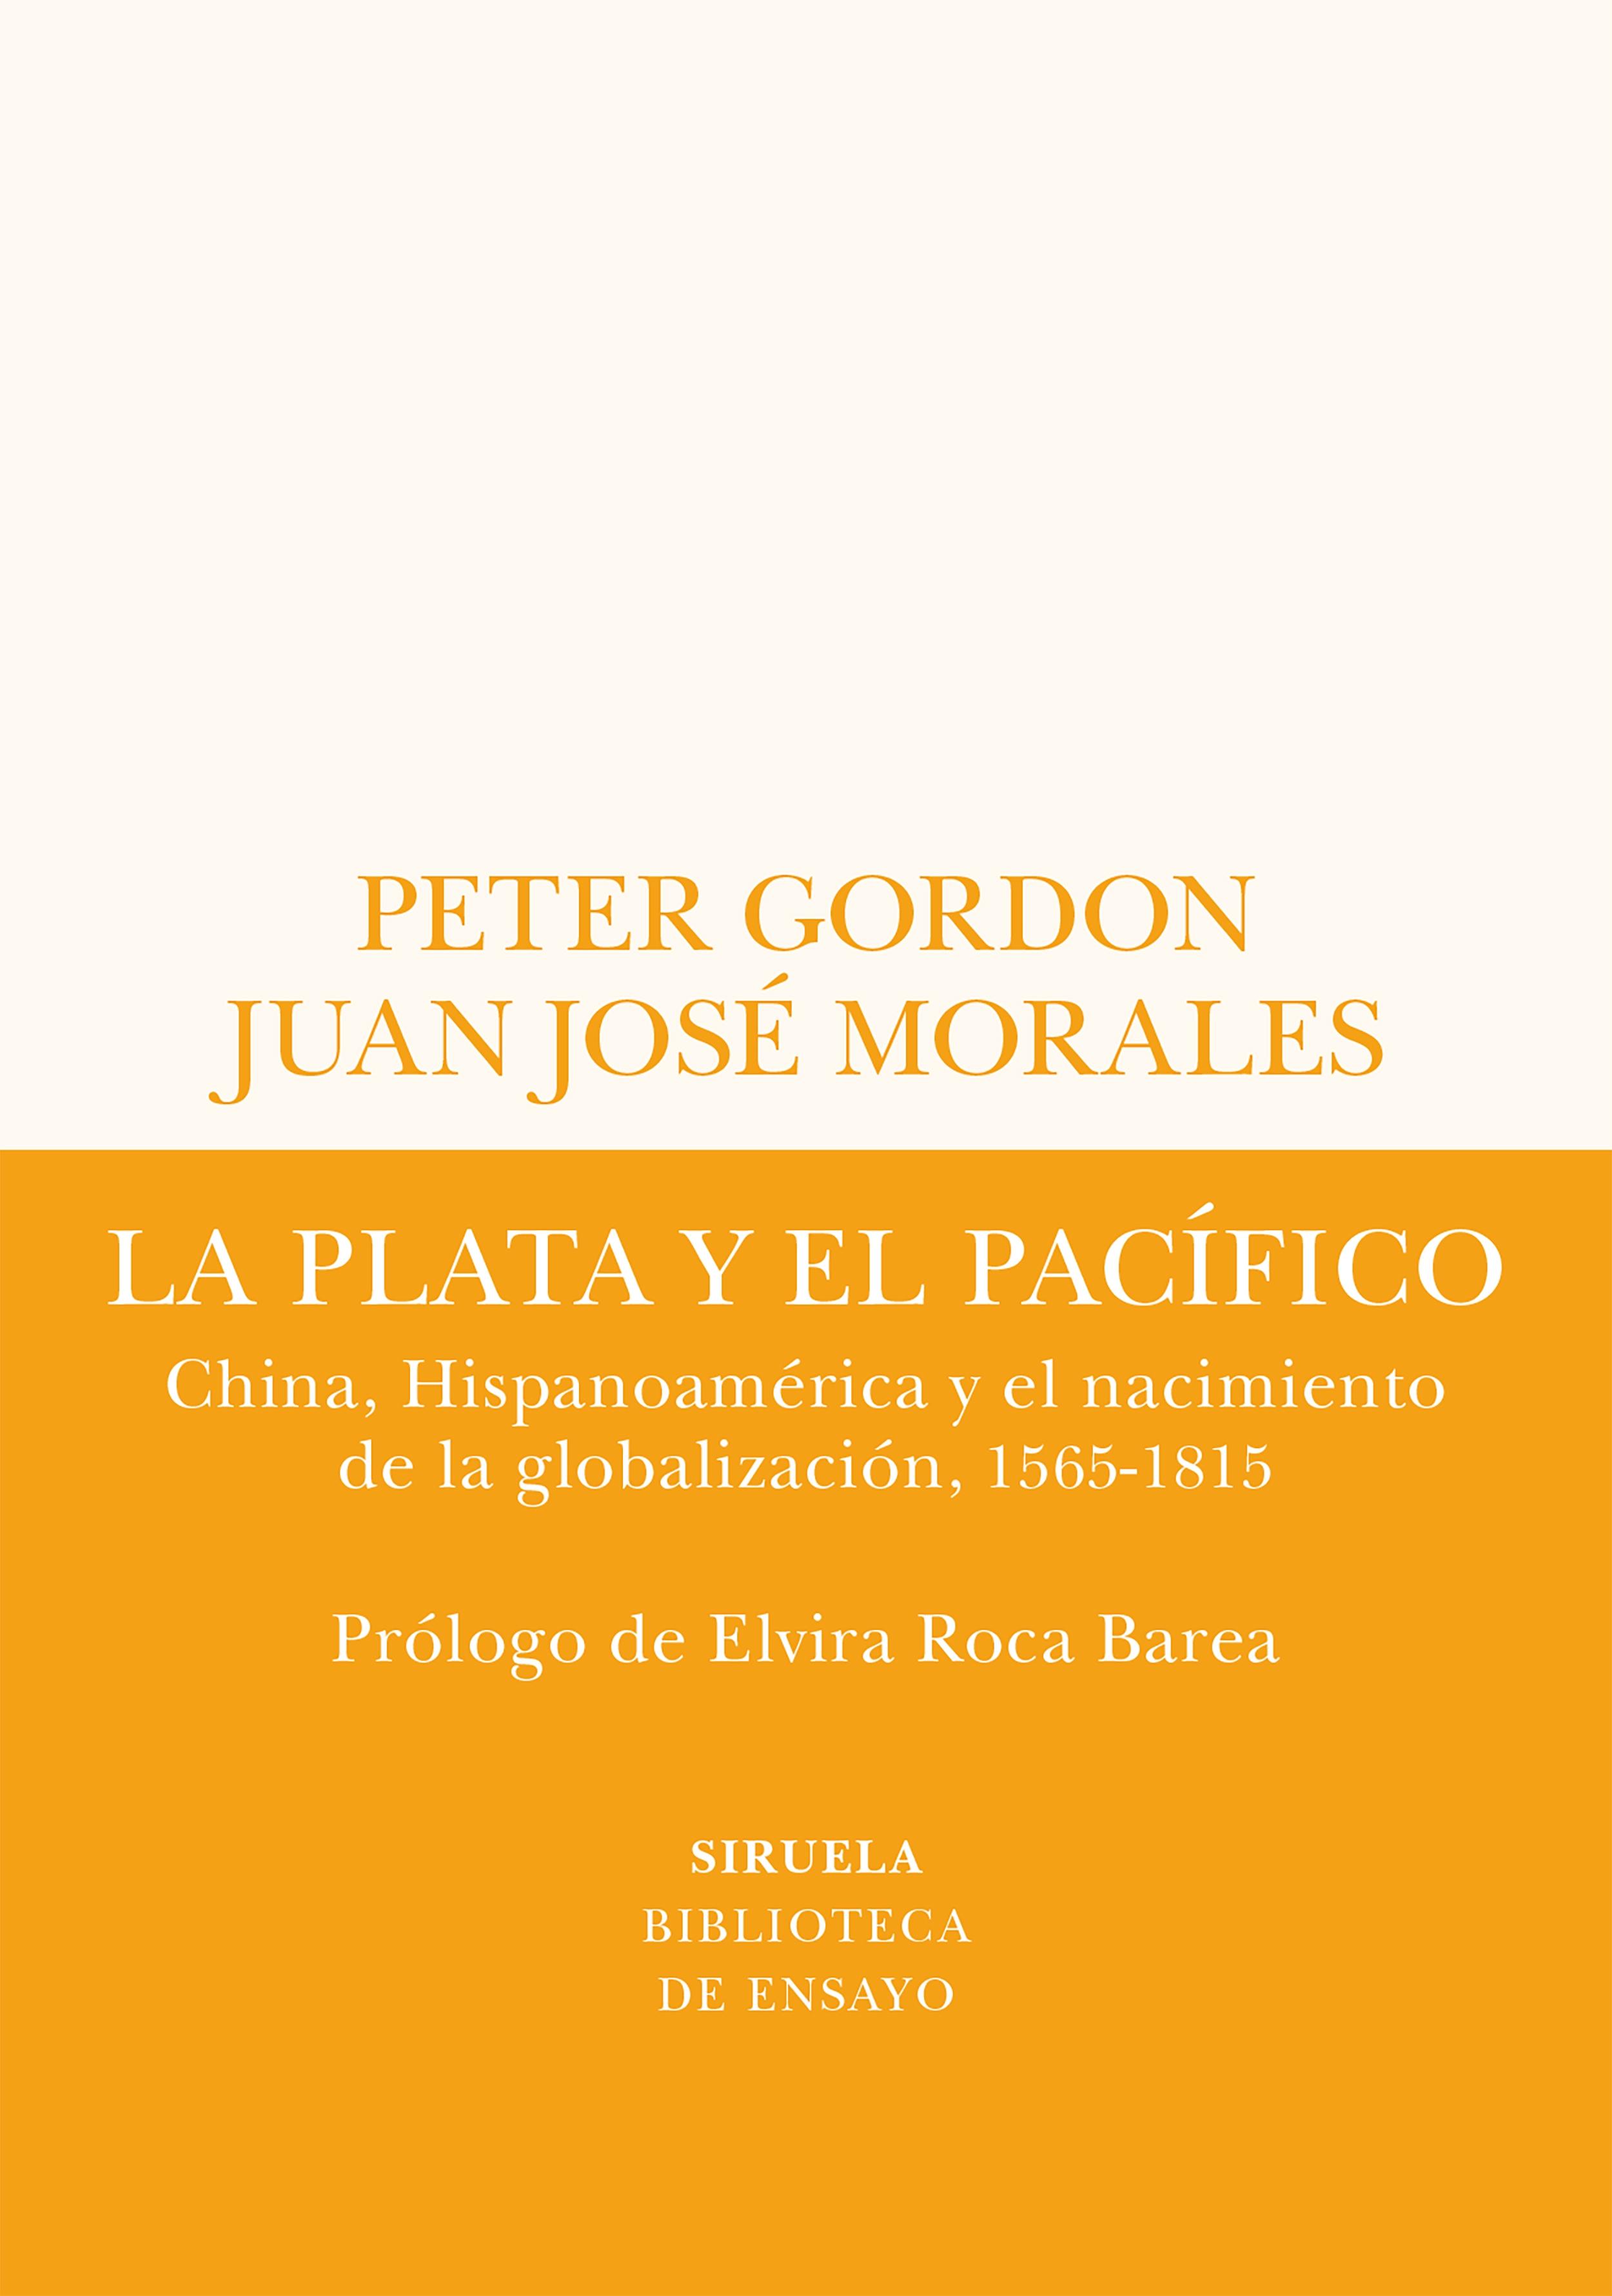 La Plata y el Pacífico "China, Hispanoamérica y el Nacimiento de la Globalización, 1565-1815". 